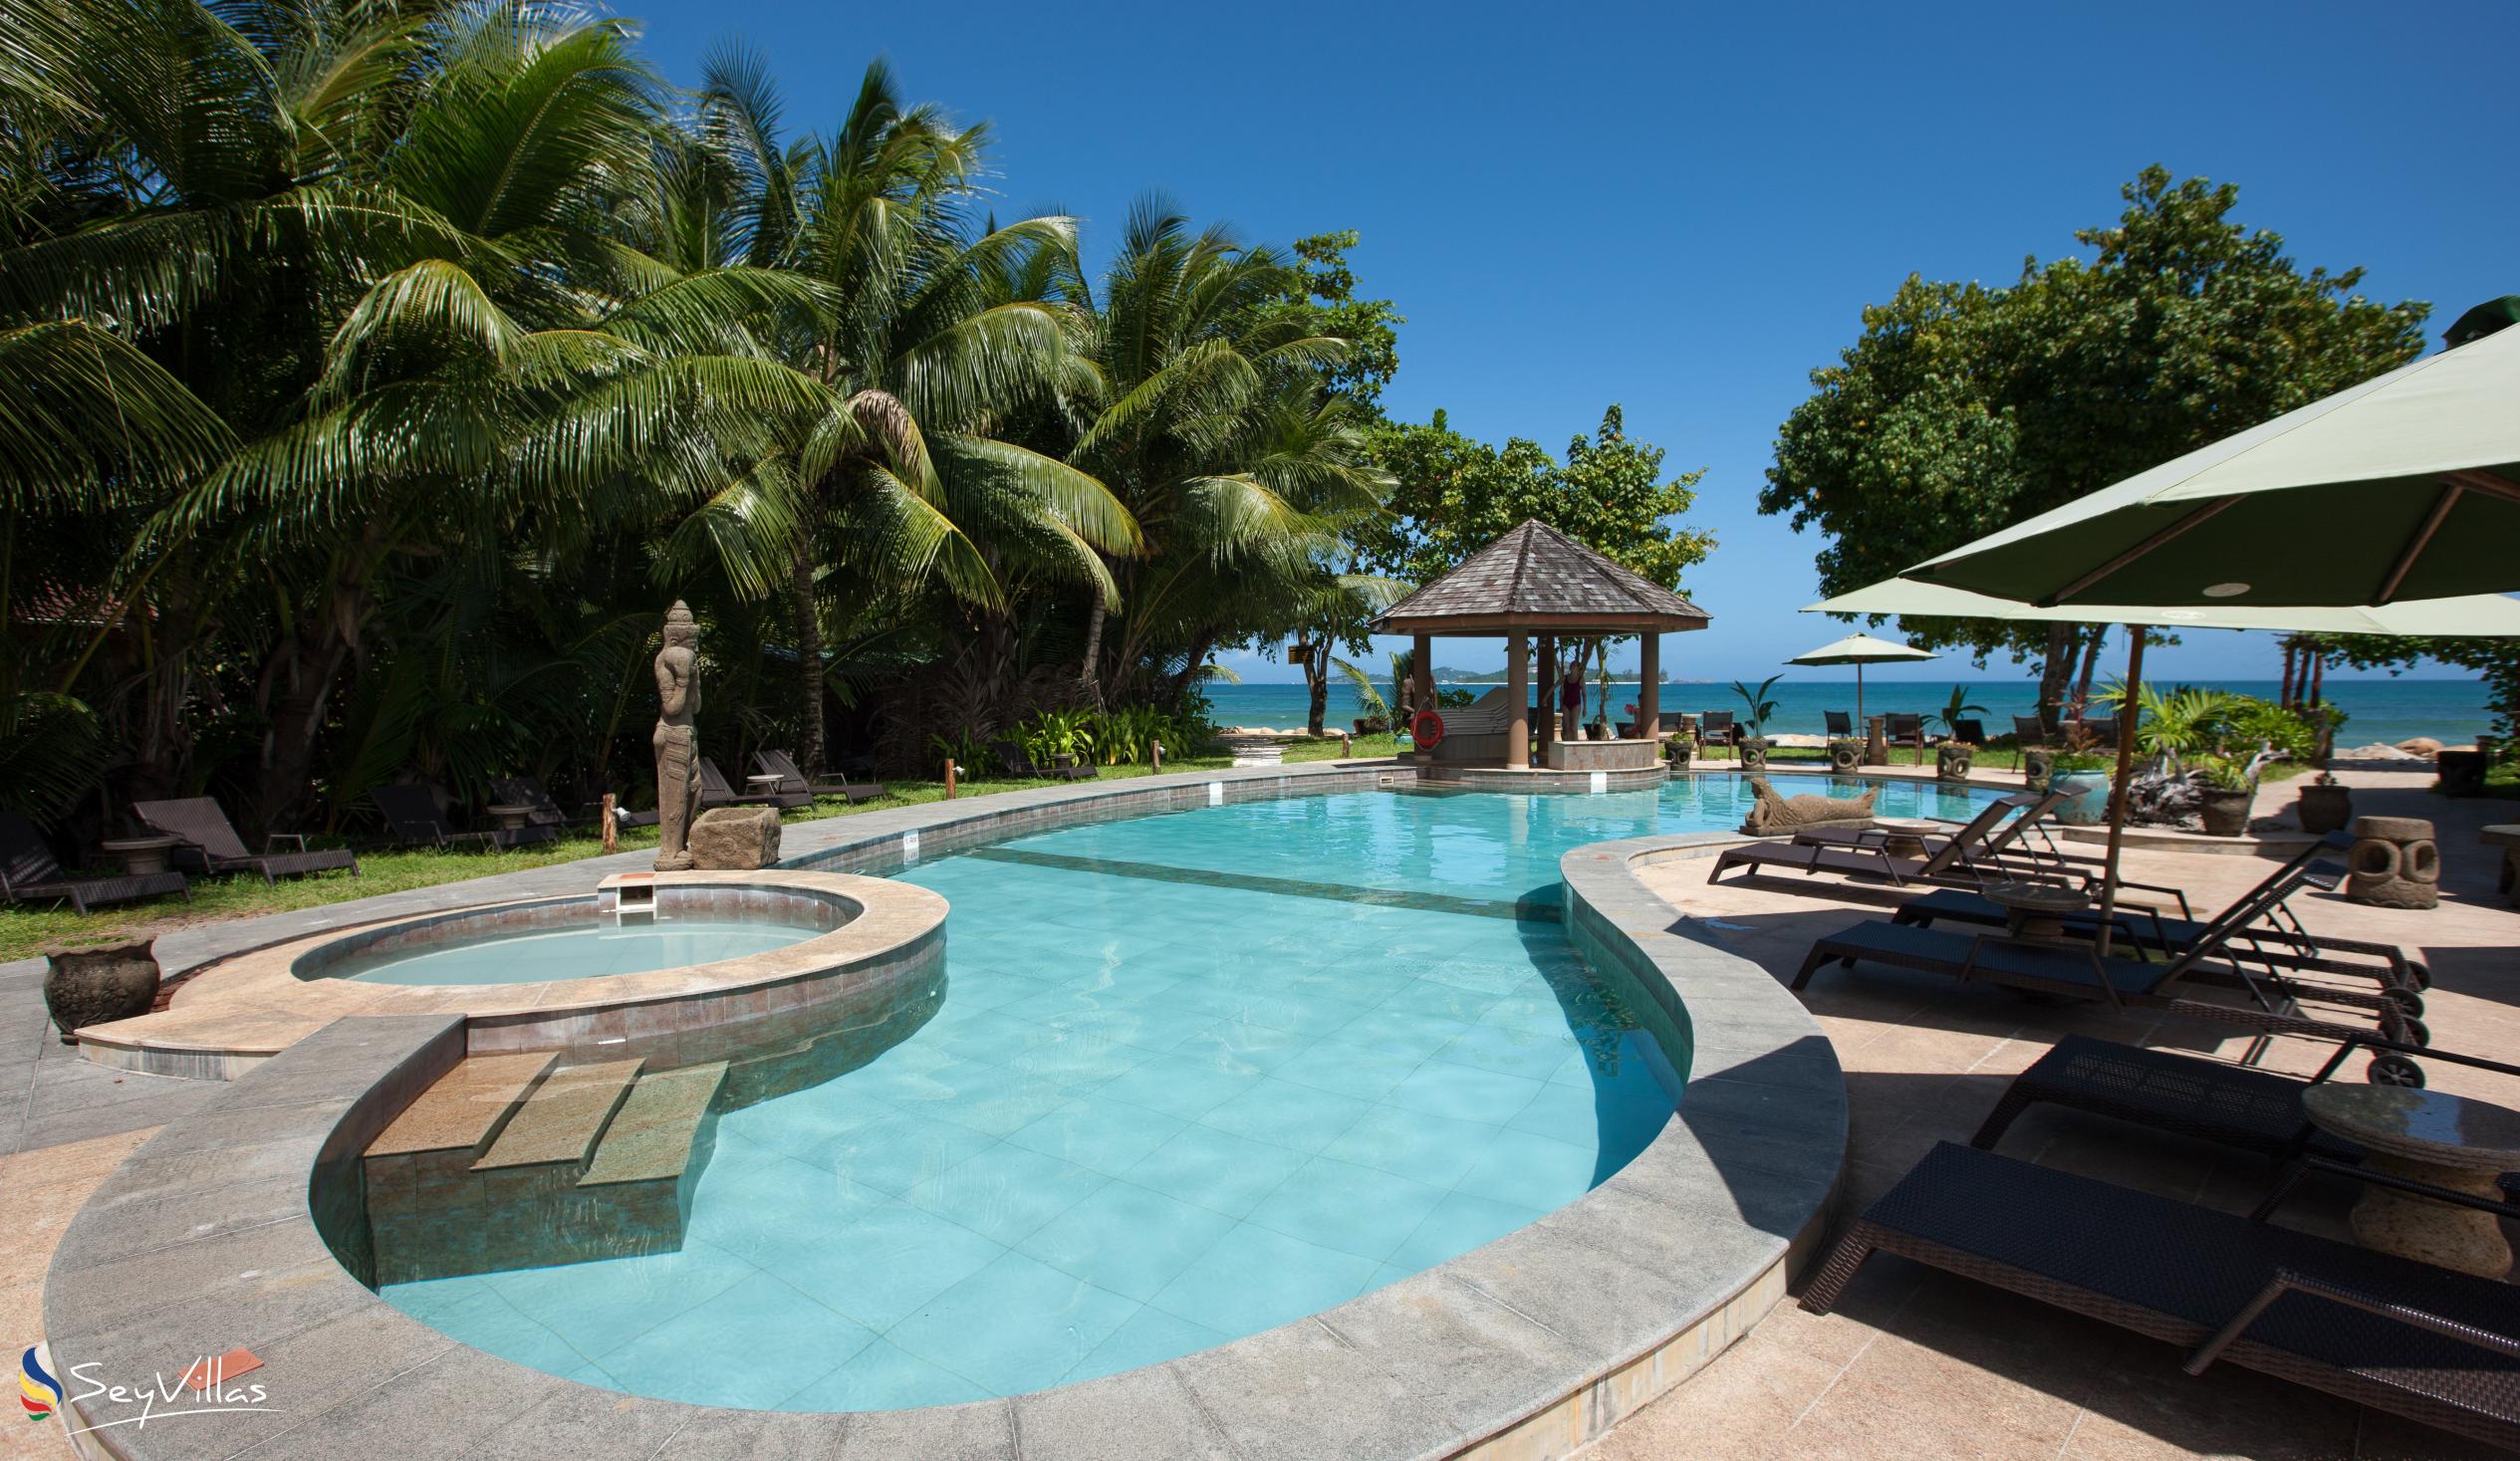 Foto 6: Castello Beach Hotel - Aussenbereich - Praslin (Seychellen)